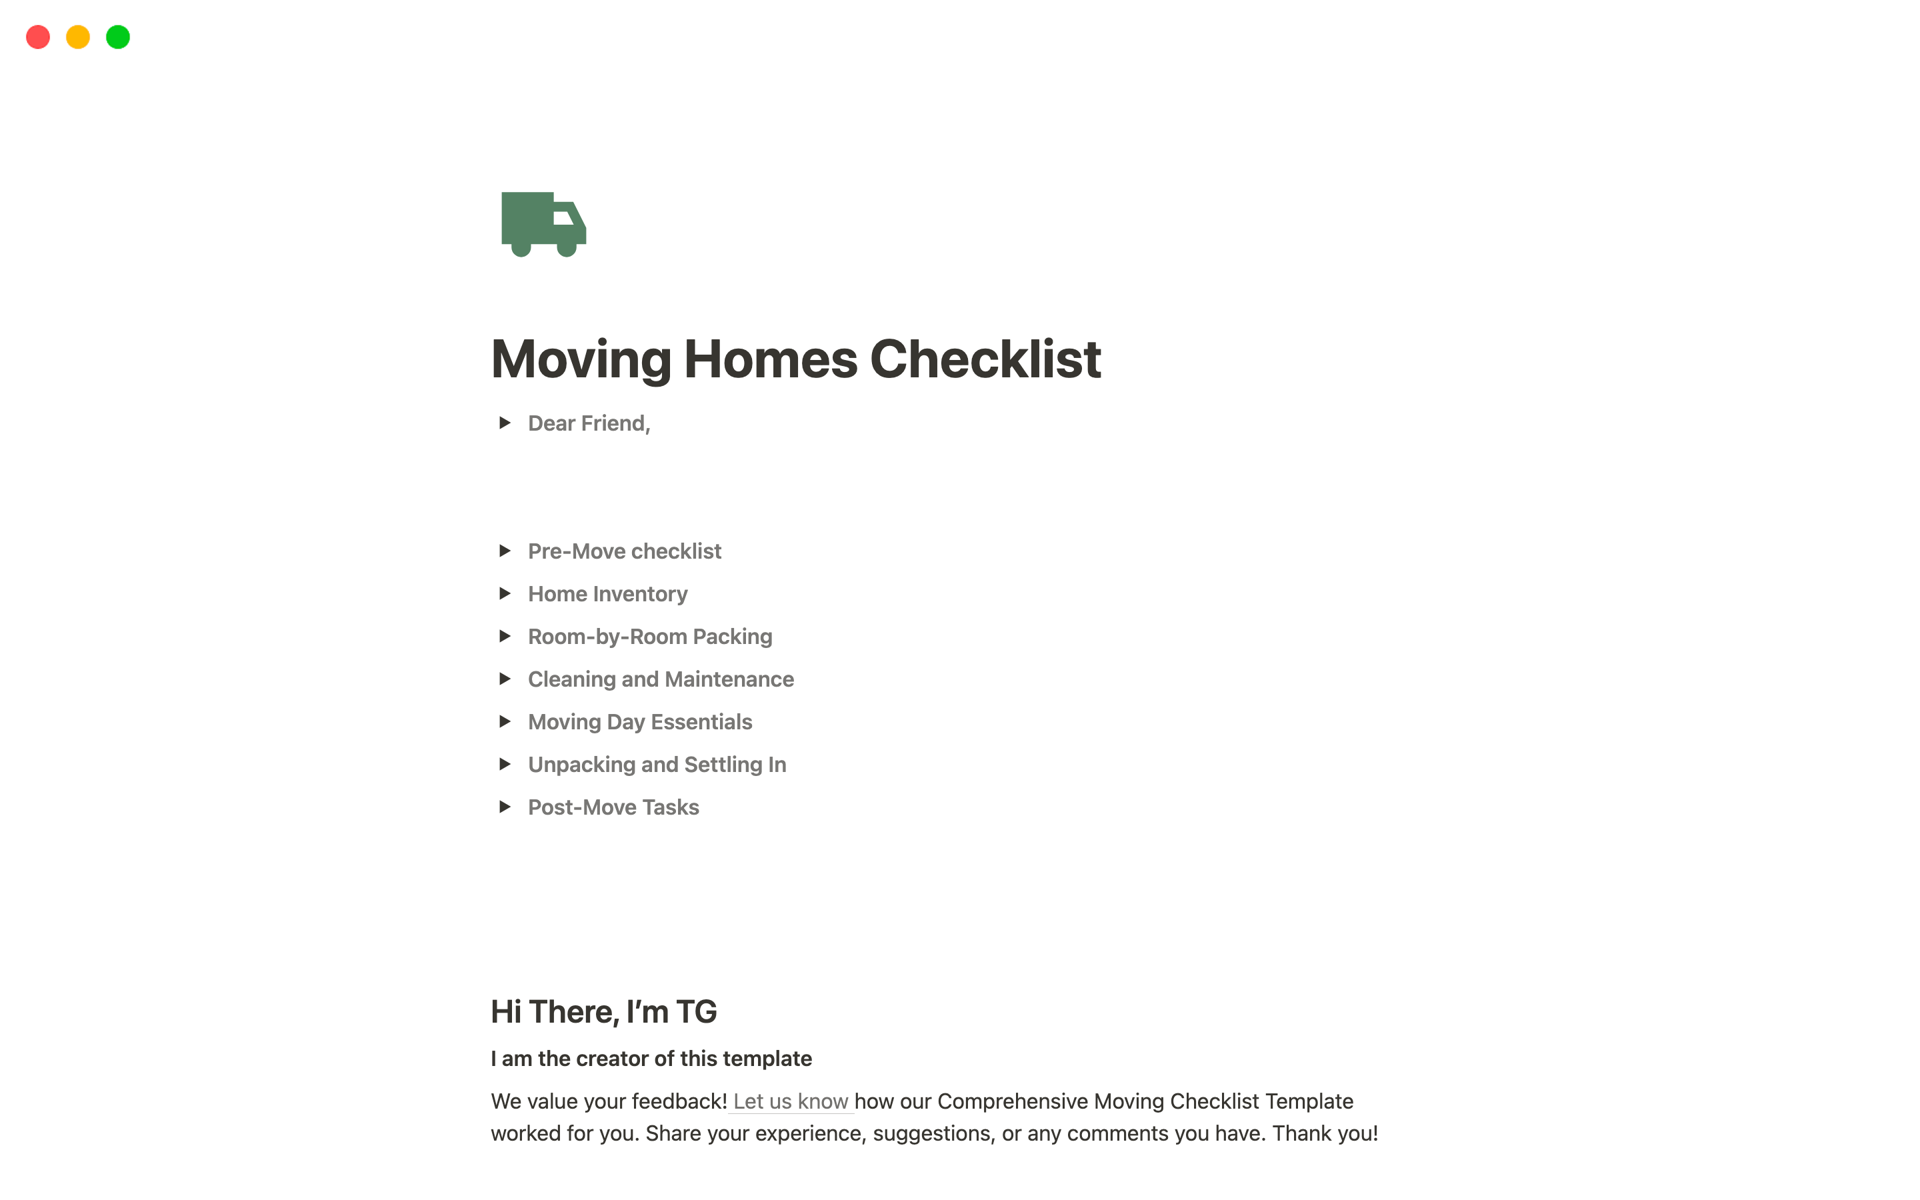 Aperçu du modèle de Moving Homes Checklist